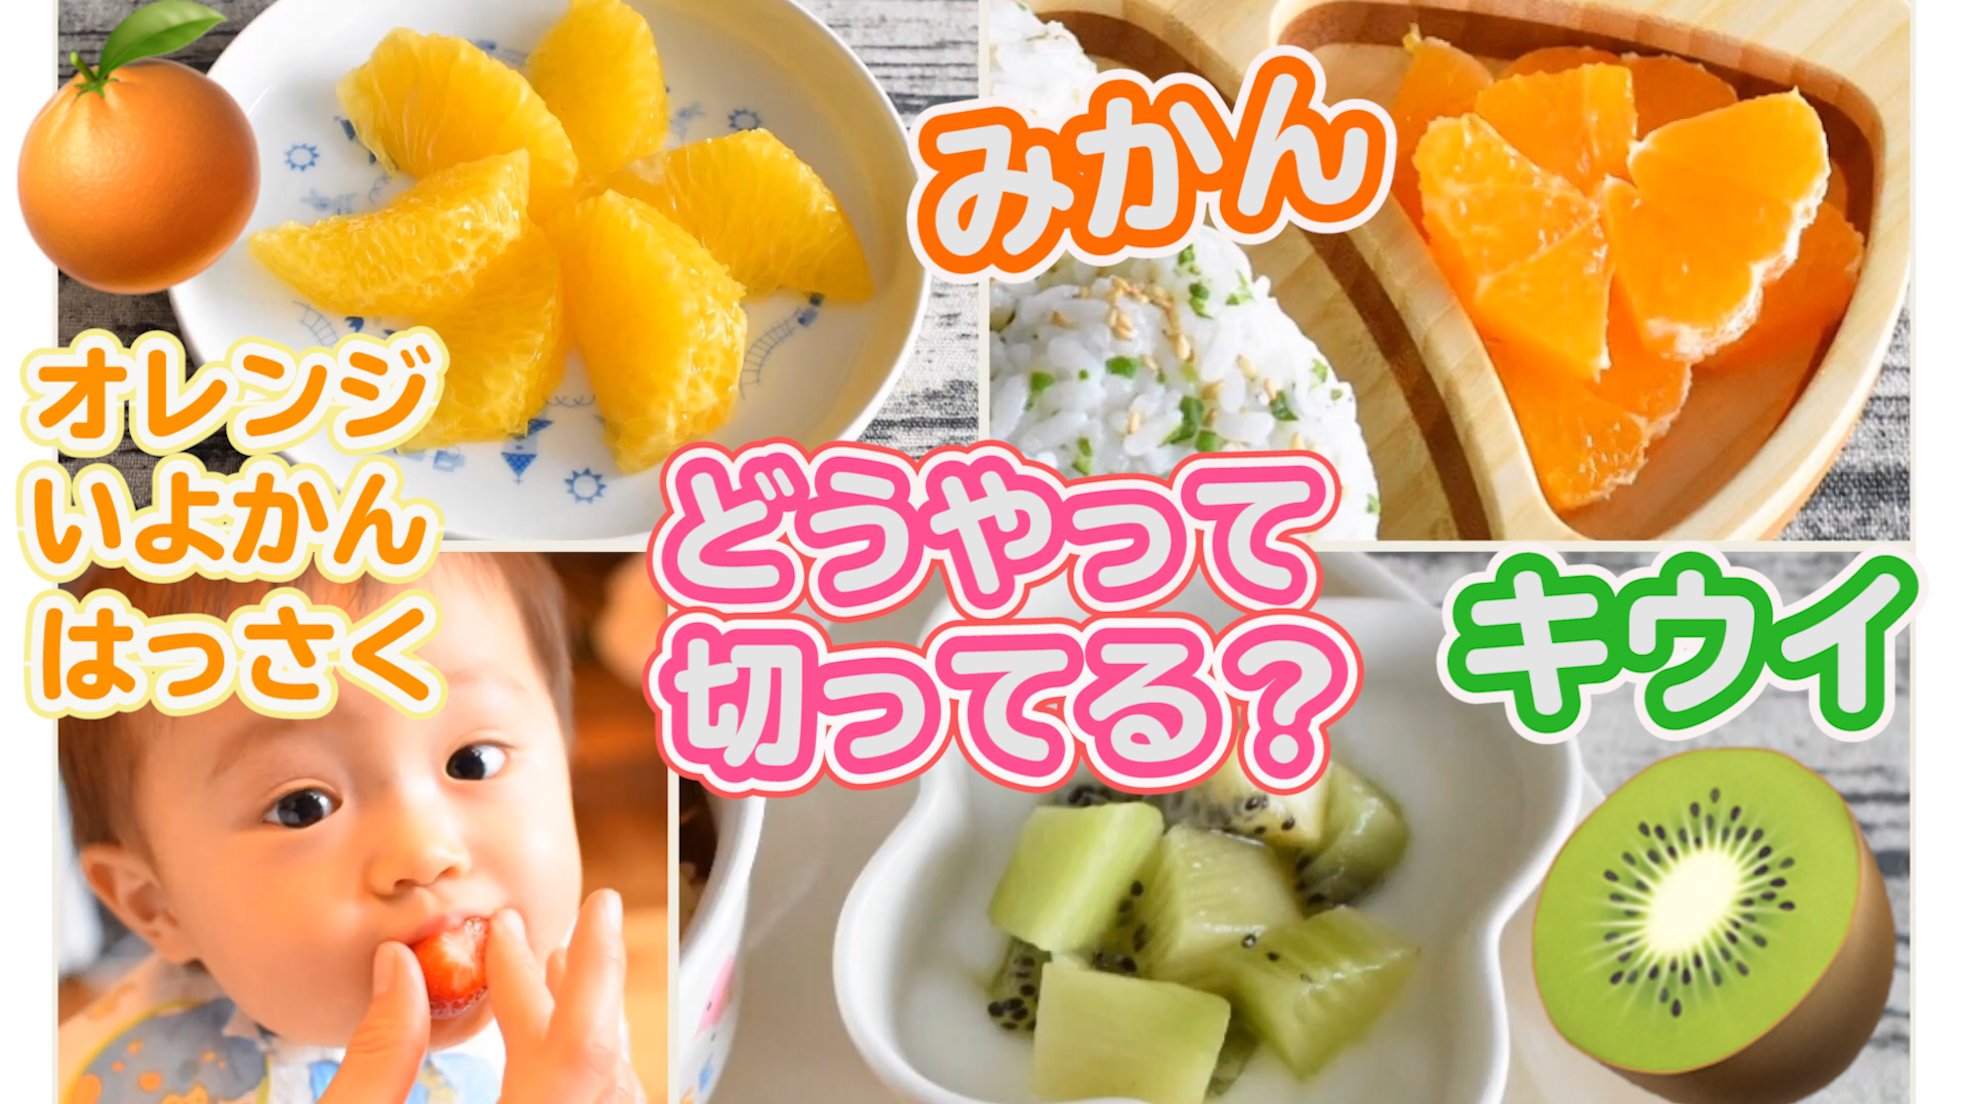 みーちゃんの離乳食 フルーツの切り方についてまとめました 果物 を食べやすく切ります T Co Ir9smlnuzt 離乳食 離乳食完了期 赤ちゃん 幼児食 T Co Mvit7cjz3k Twitter